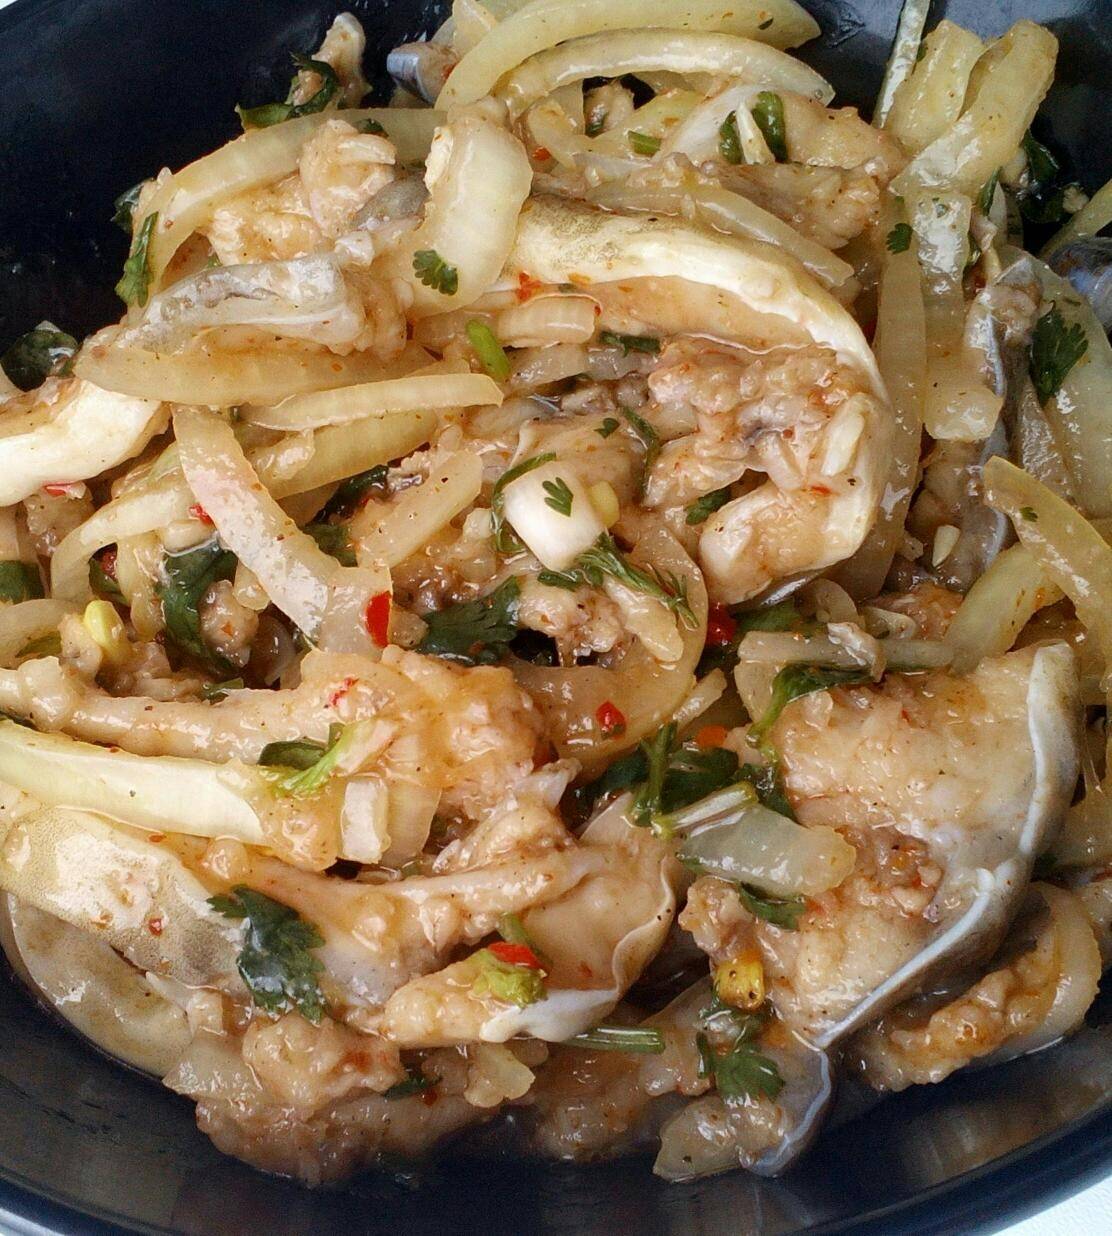 Пошаговый рецепт приготовления хе из рыбы по-корейски